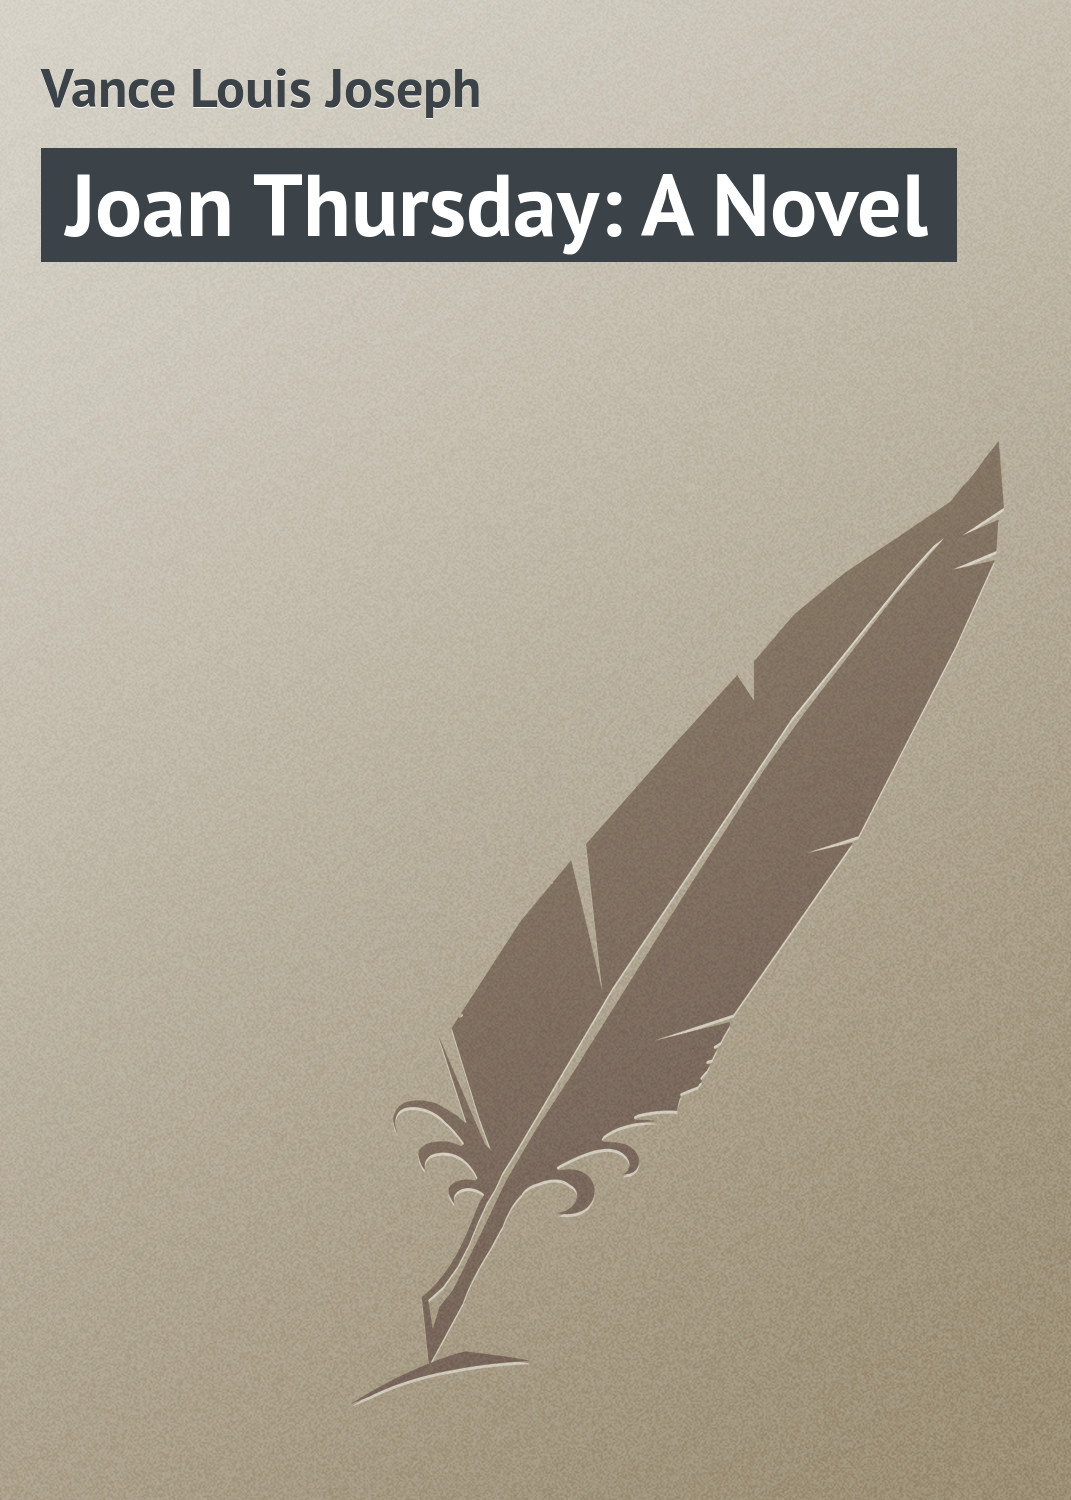 Книга Joan Thursday: A Novel из серии , созданная Louis Vance, может относится к жанру Зарубежная классика. Стоимость электронной книги Joan Thursday: A Novel с идентификатором 23155171 составляет 5.99 руб.